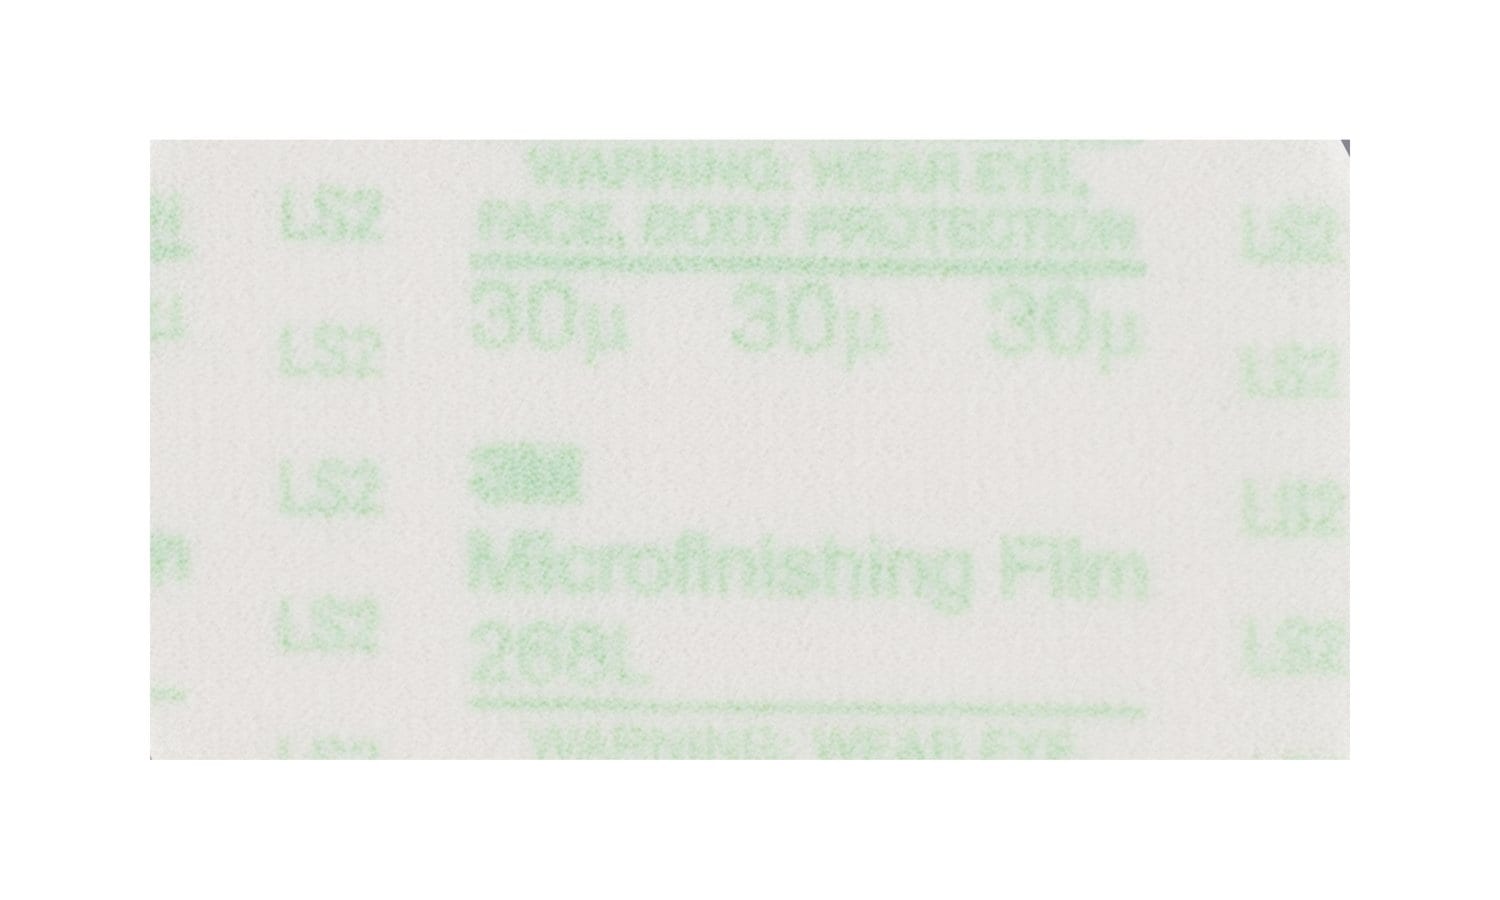 7100017774 - 3M Microfinishing PSA Film Sheet 268L, 8 1/2 in x 11 in, 30 Mic, Type
D, 200 ea/Case